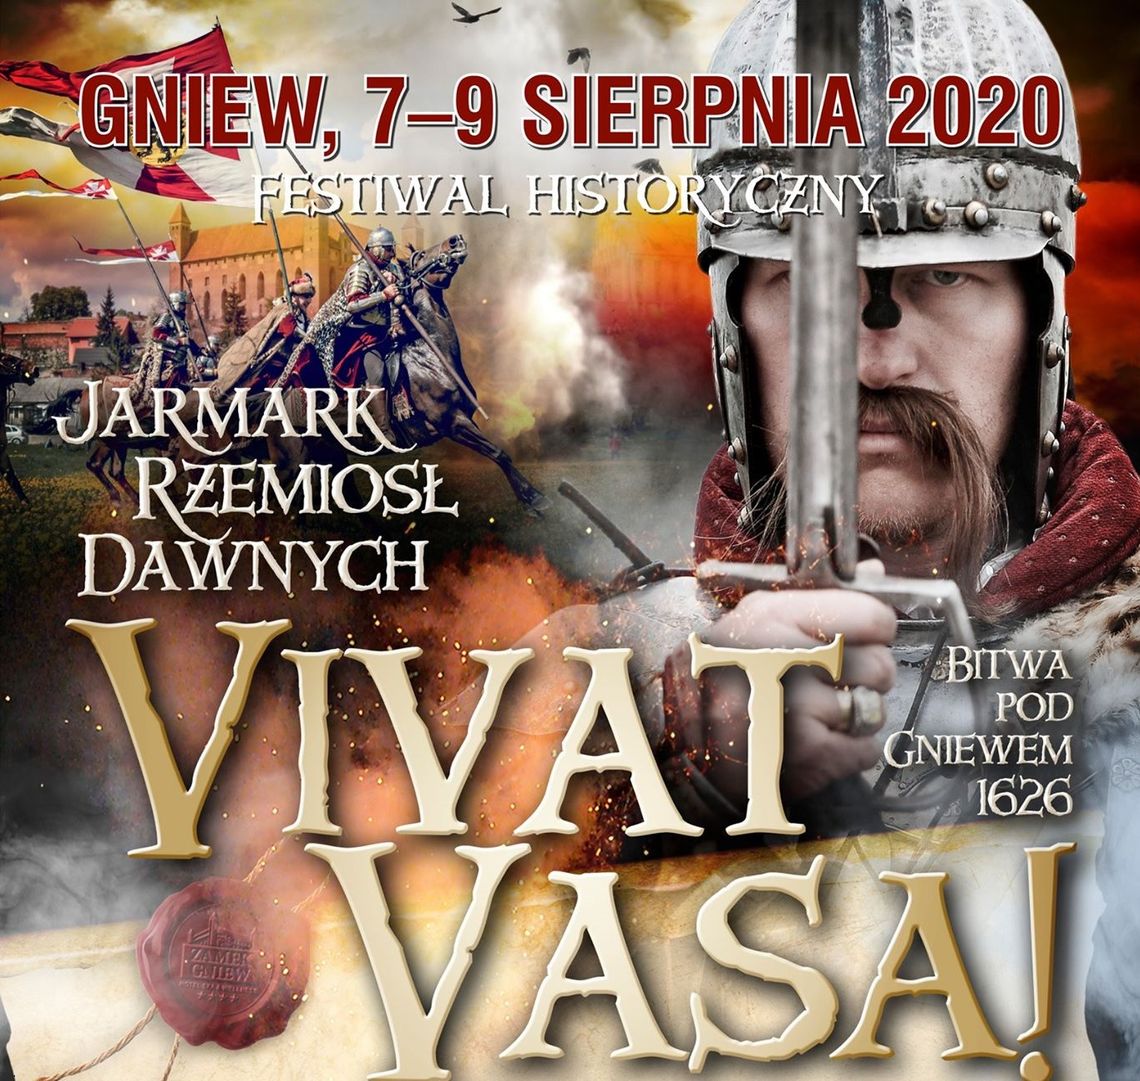 Inscenizacja, jarmark, warsztaty i koncerty w Gniewie, czyli kolejna edycja Festiwalu Historycznego Vivat Vasa!